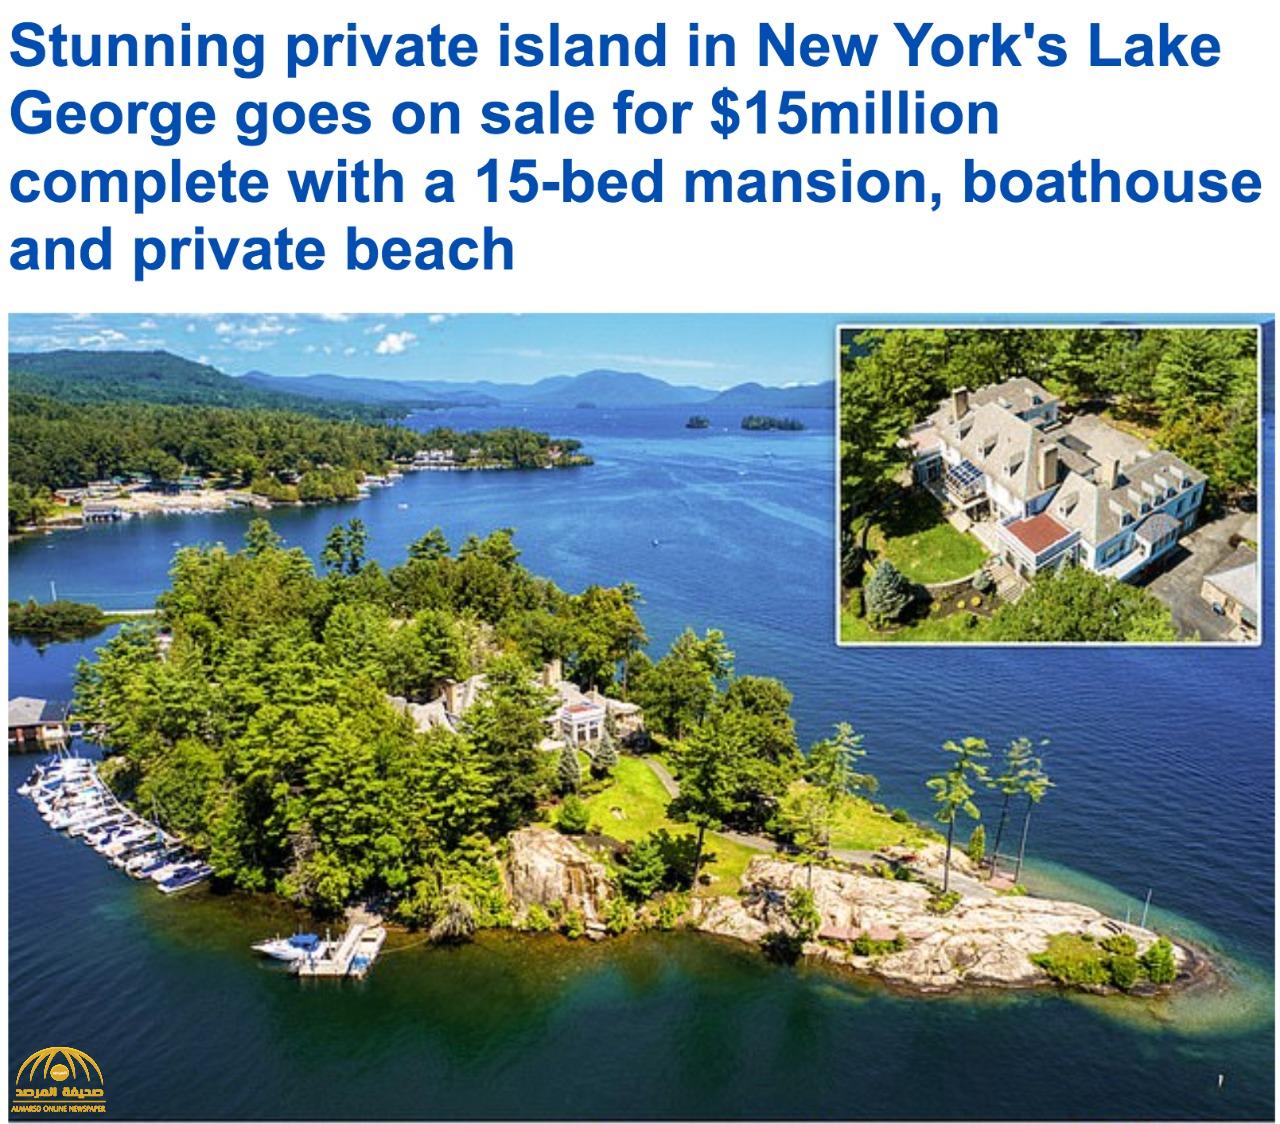 شاهد: قصر على جزيرة خاصة في نيويورك  للبيع مقابل 15  مليون دولار - صور و فيديو